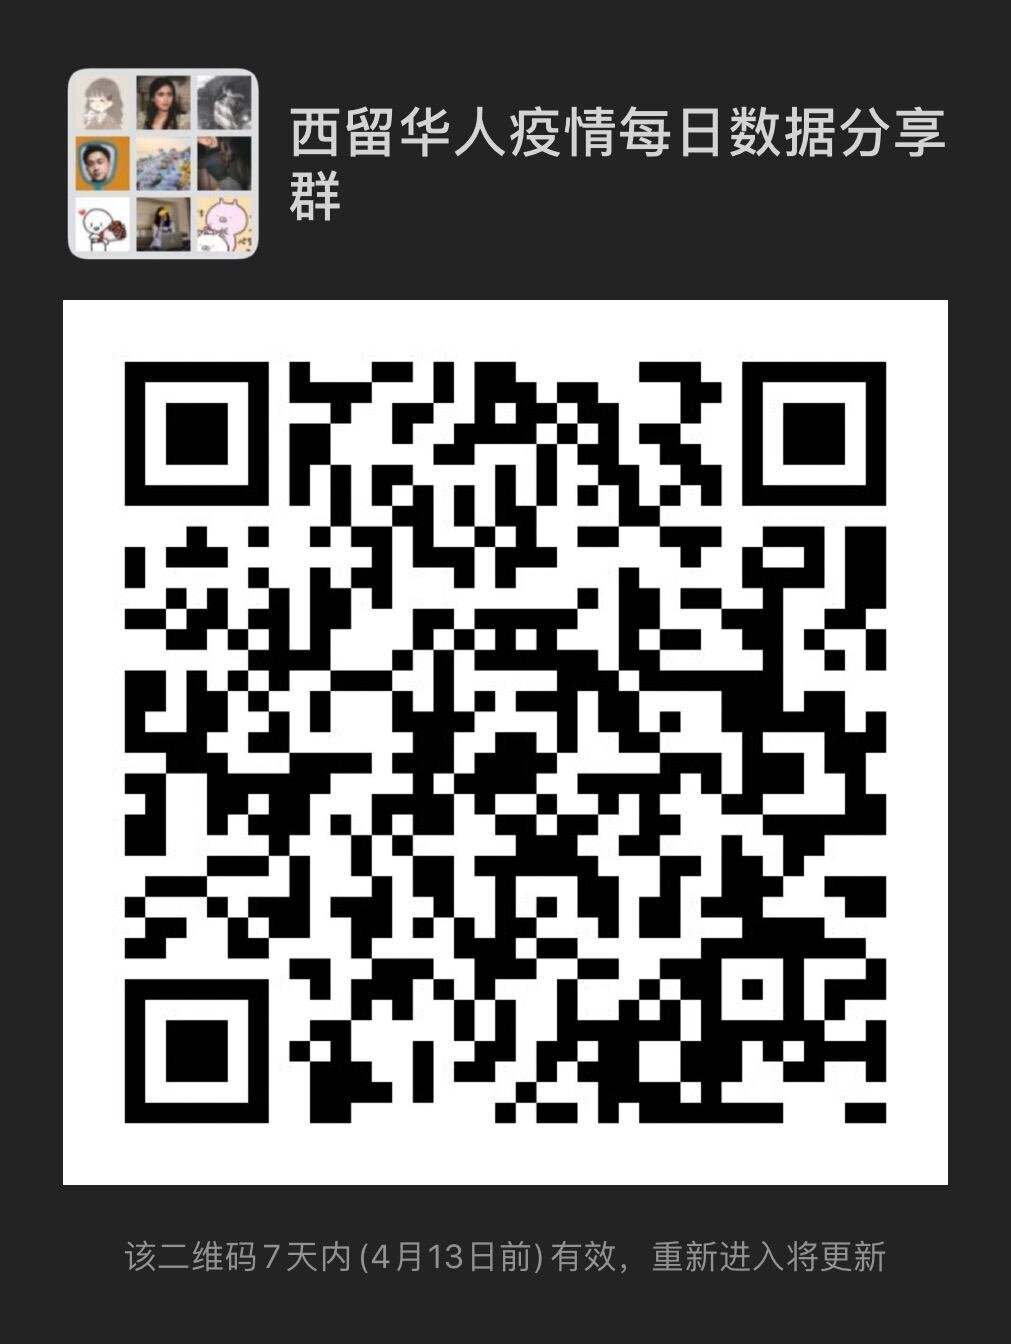 WhatsApp Image 2020-04-06 at 11.29.29.jpg